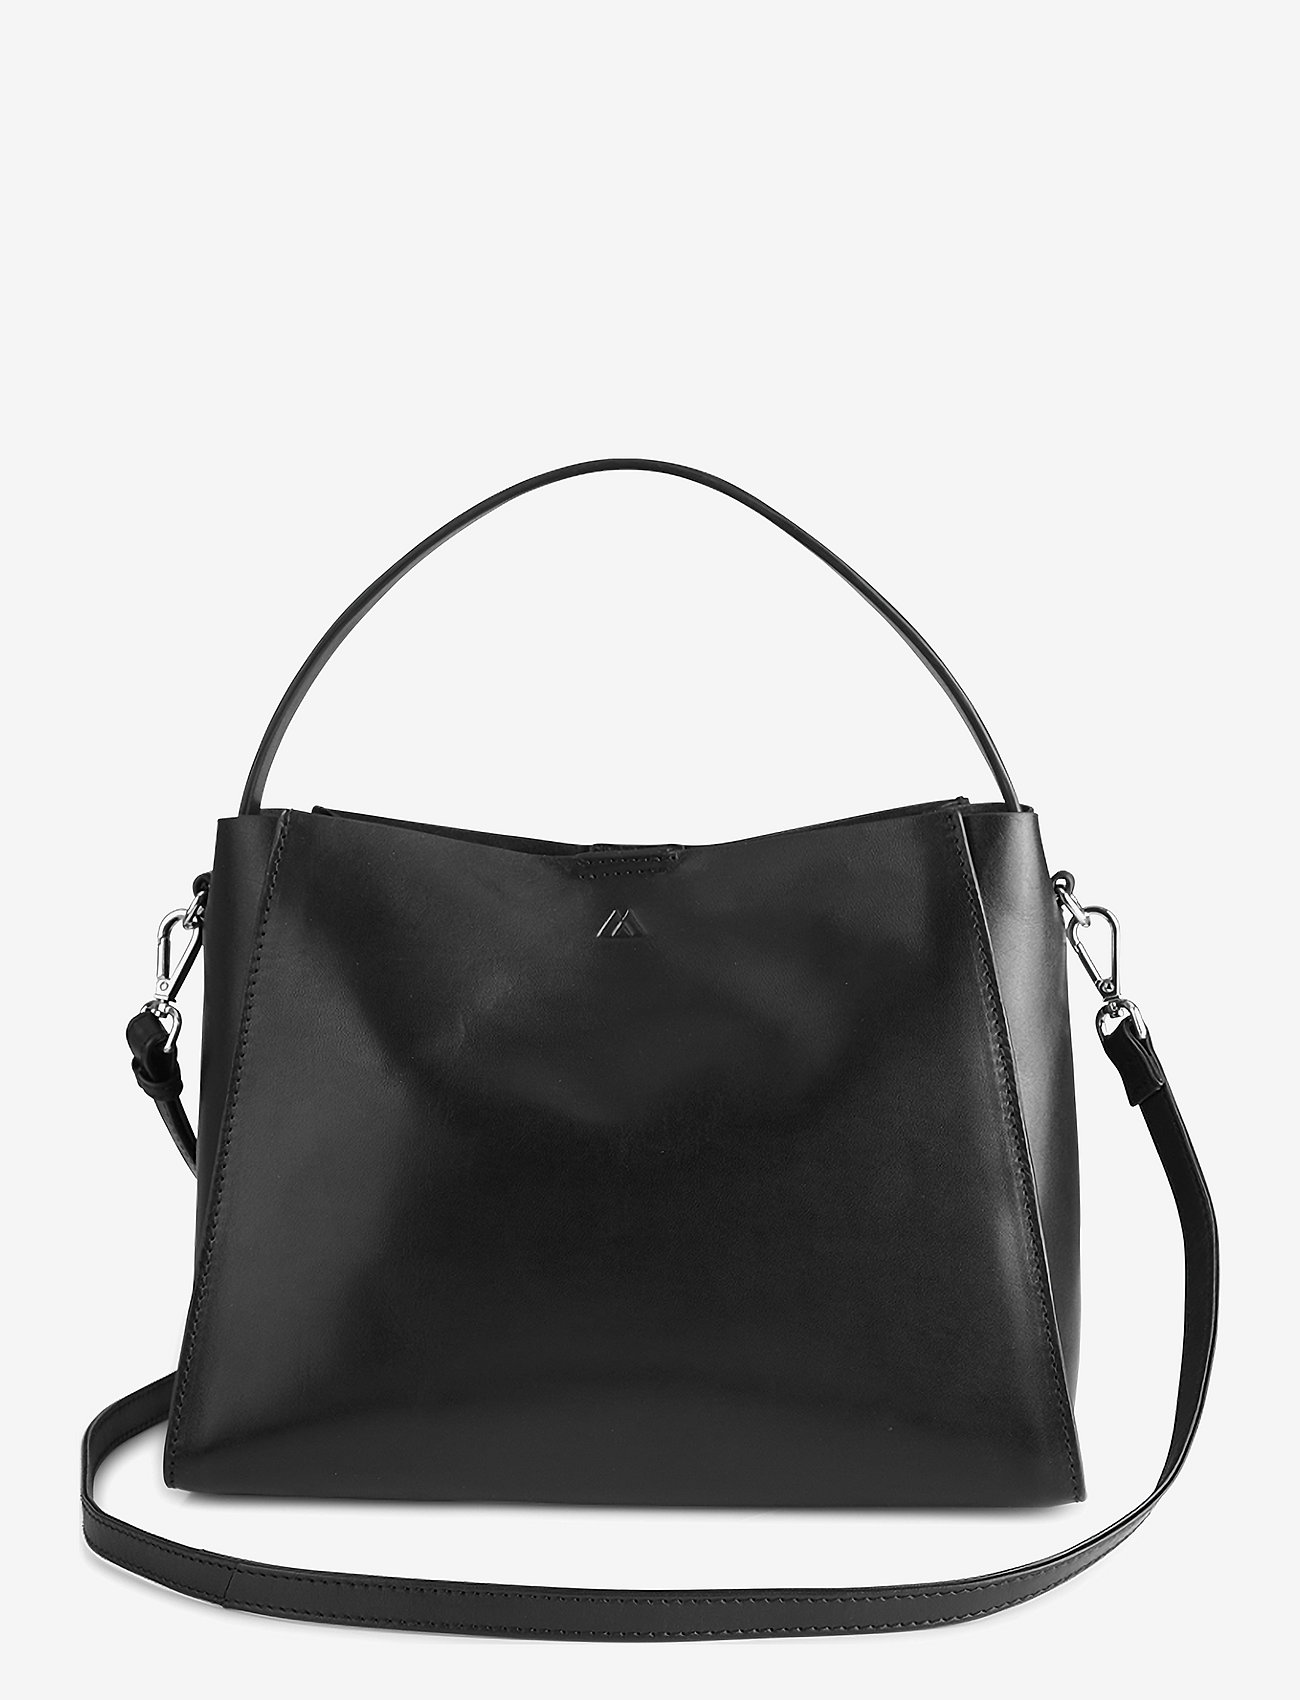 Markberg - RayneMBG Bag, Antique - odzież imprezowa w cenach outletowych - black - 0